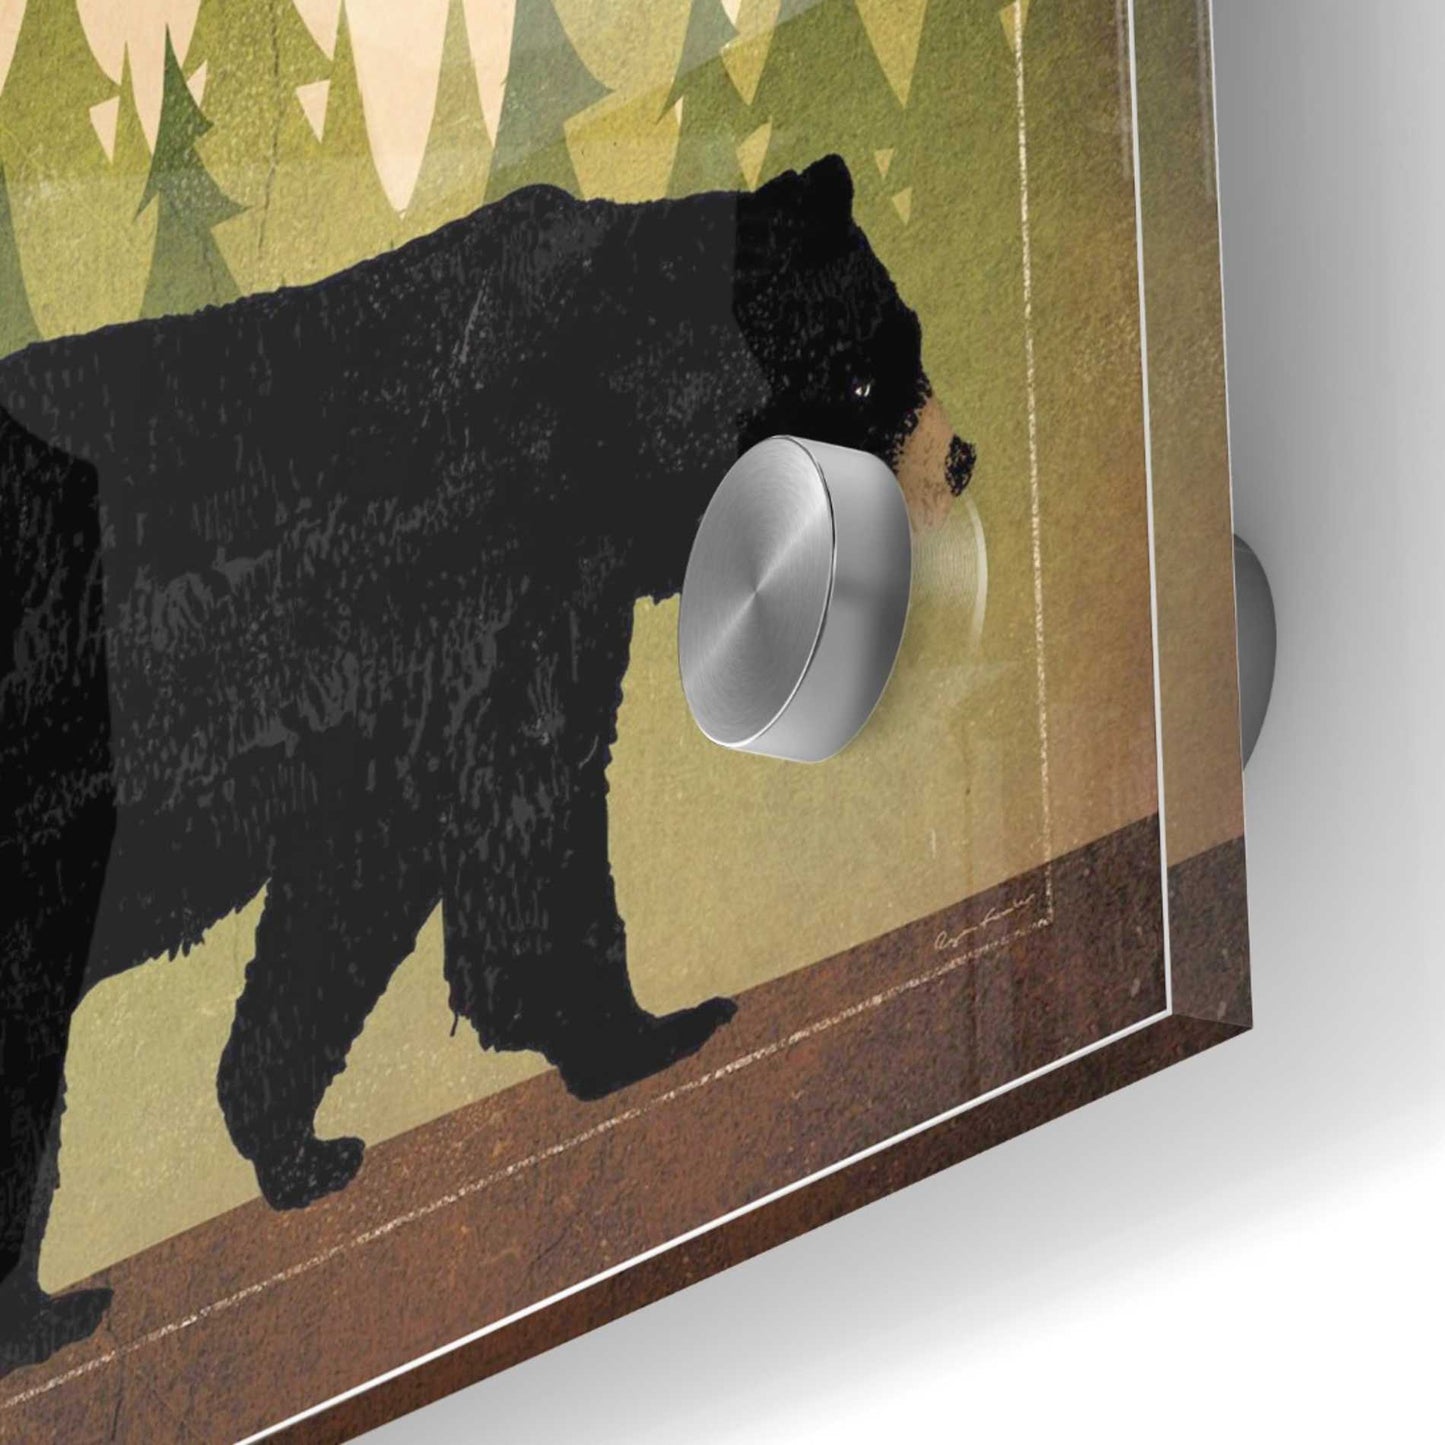 Epic Art 'Take a Hike Bear Black Bear Stout' by Ryan Fowler, Acrylic Glass Wall Art,24x24